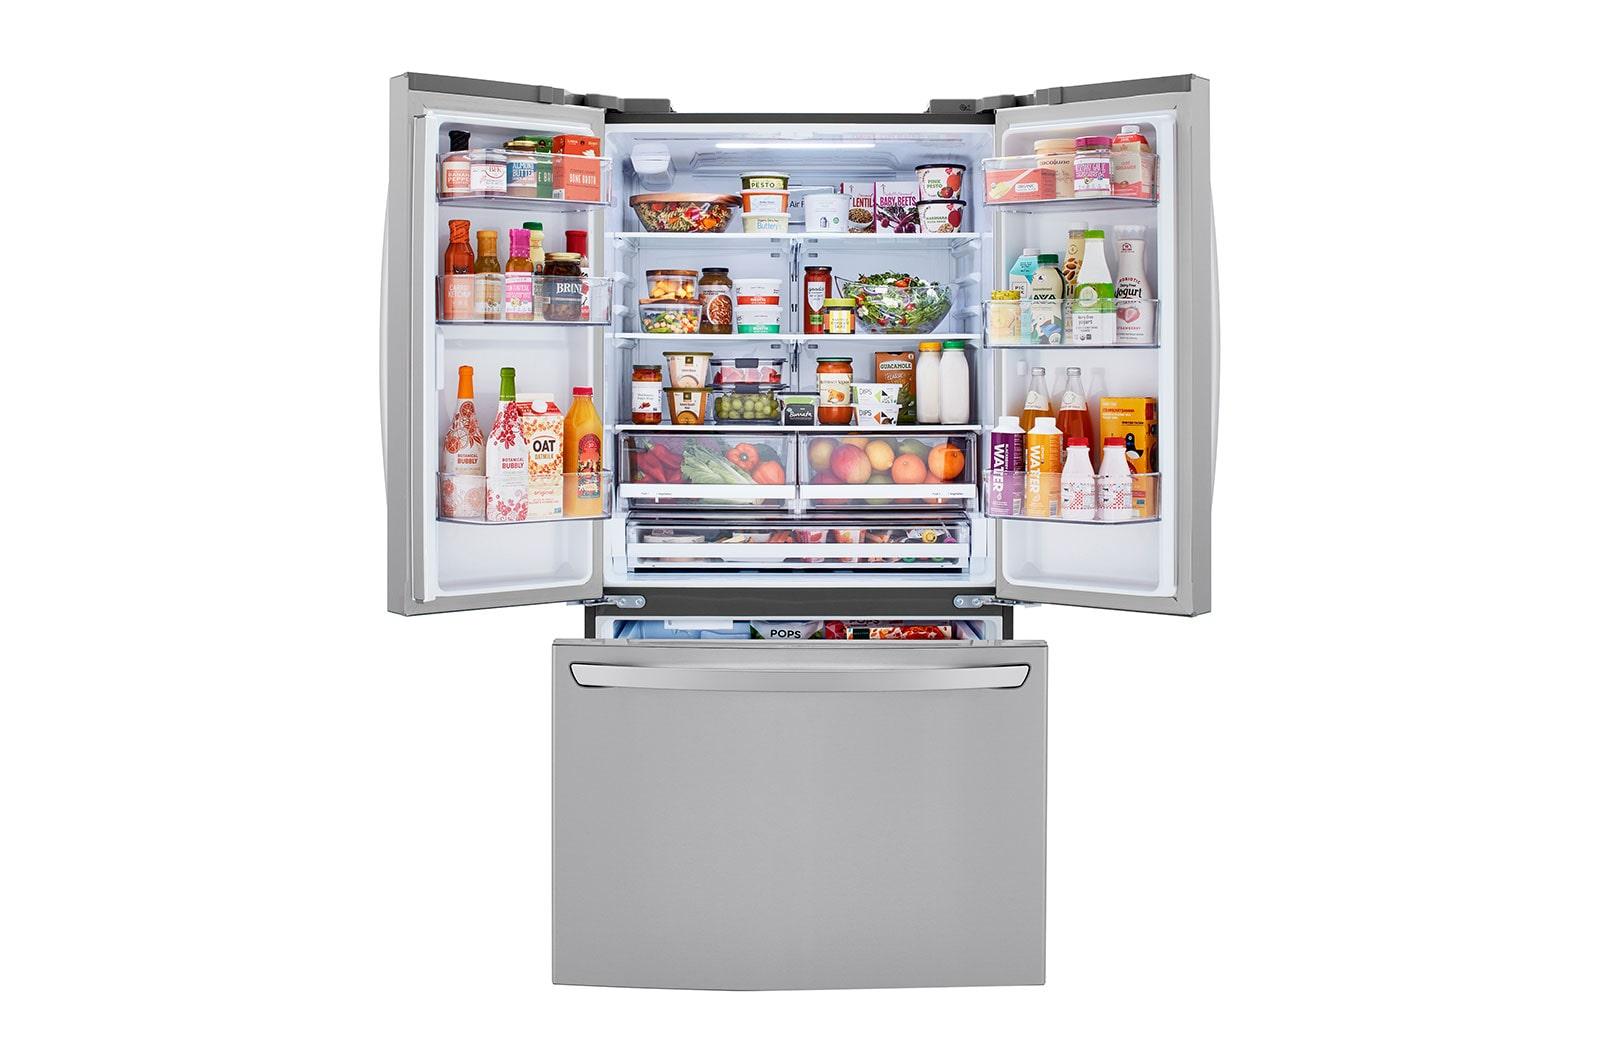 Lg LRFCS29D6S 29 Cu. Ft. Smart French Door Refrigerator